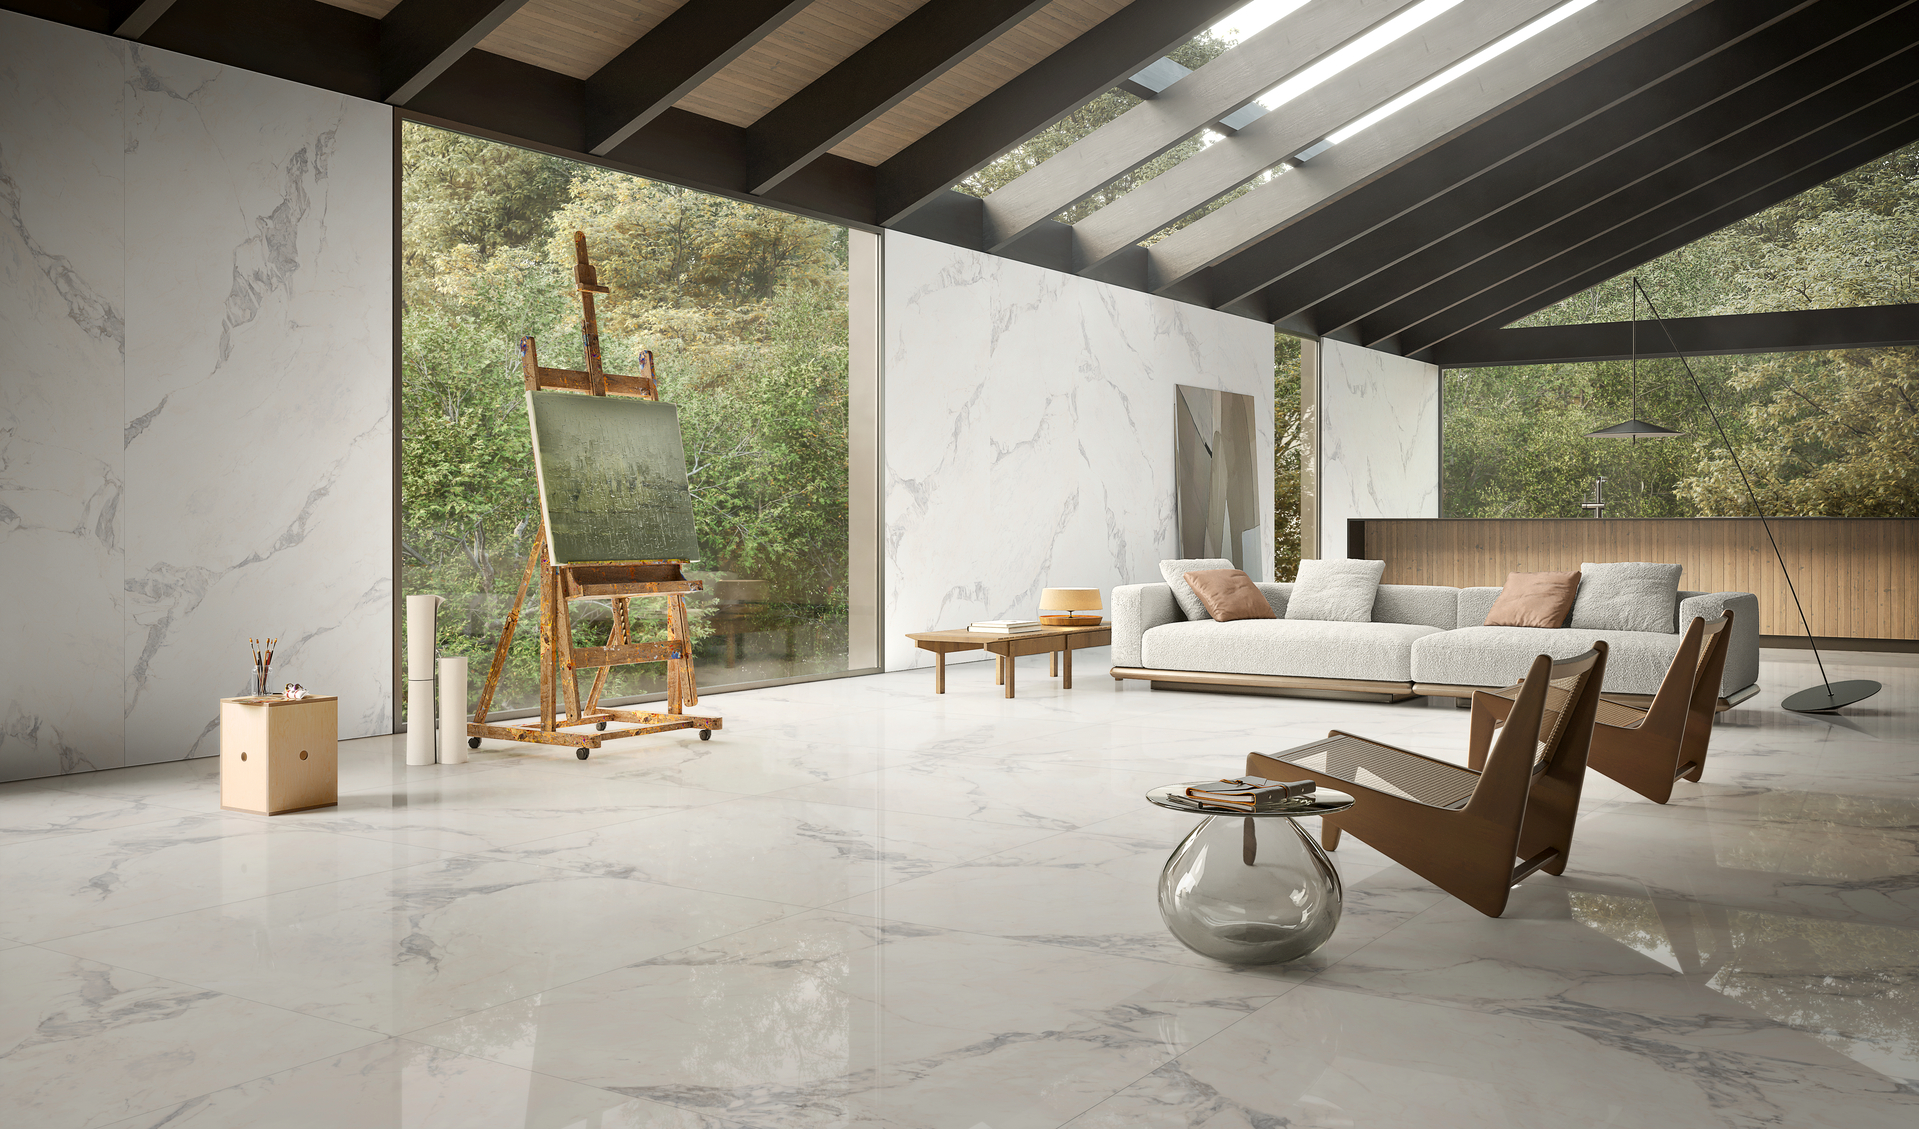 Sala de estar ampla e iluminada com piso e paredes em porcelanato que recria mármore calacata